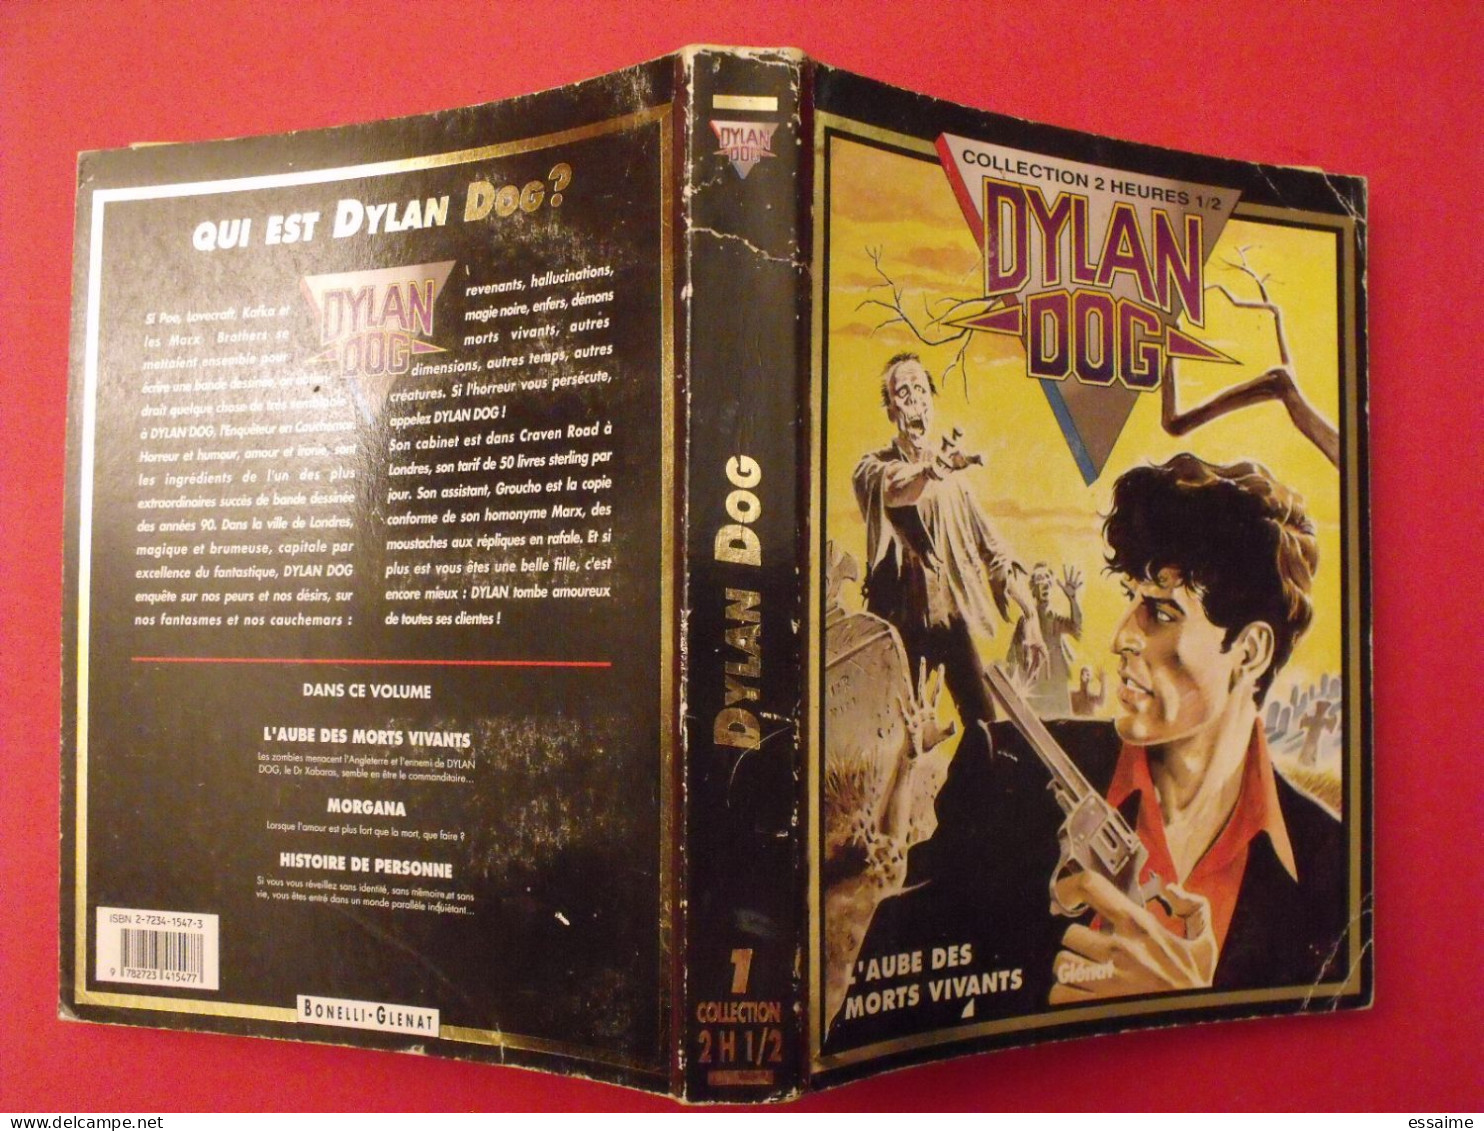 Album Dylan Dog. L'aube Des Morts Vivants. Glénat Collection 2 Heures 1/2. 1993 - Dylan Dog